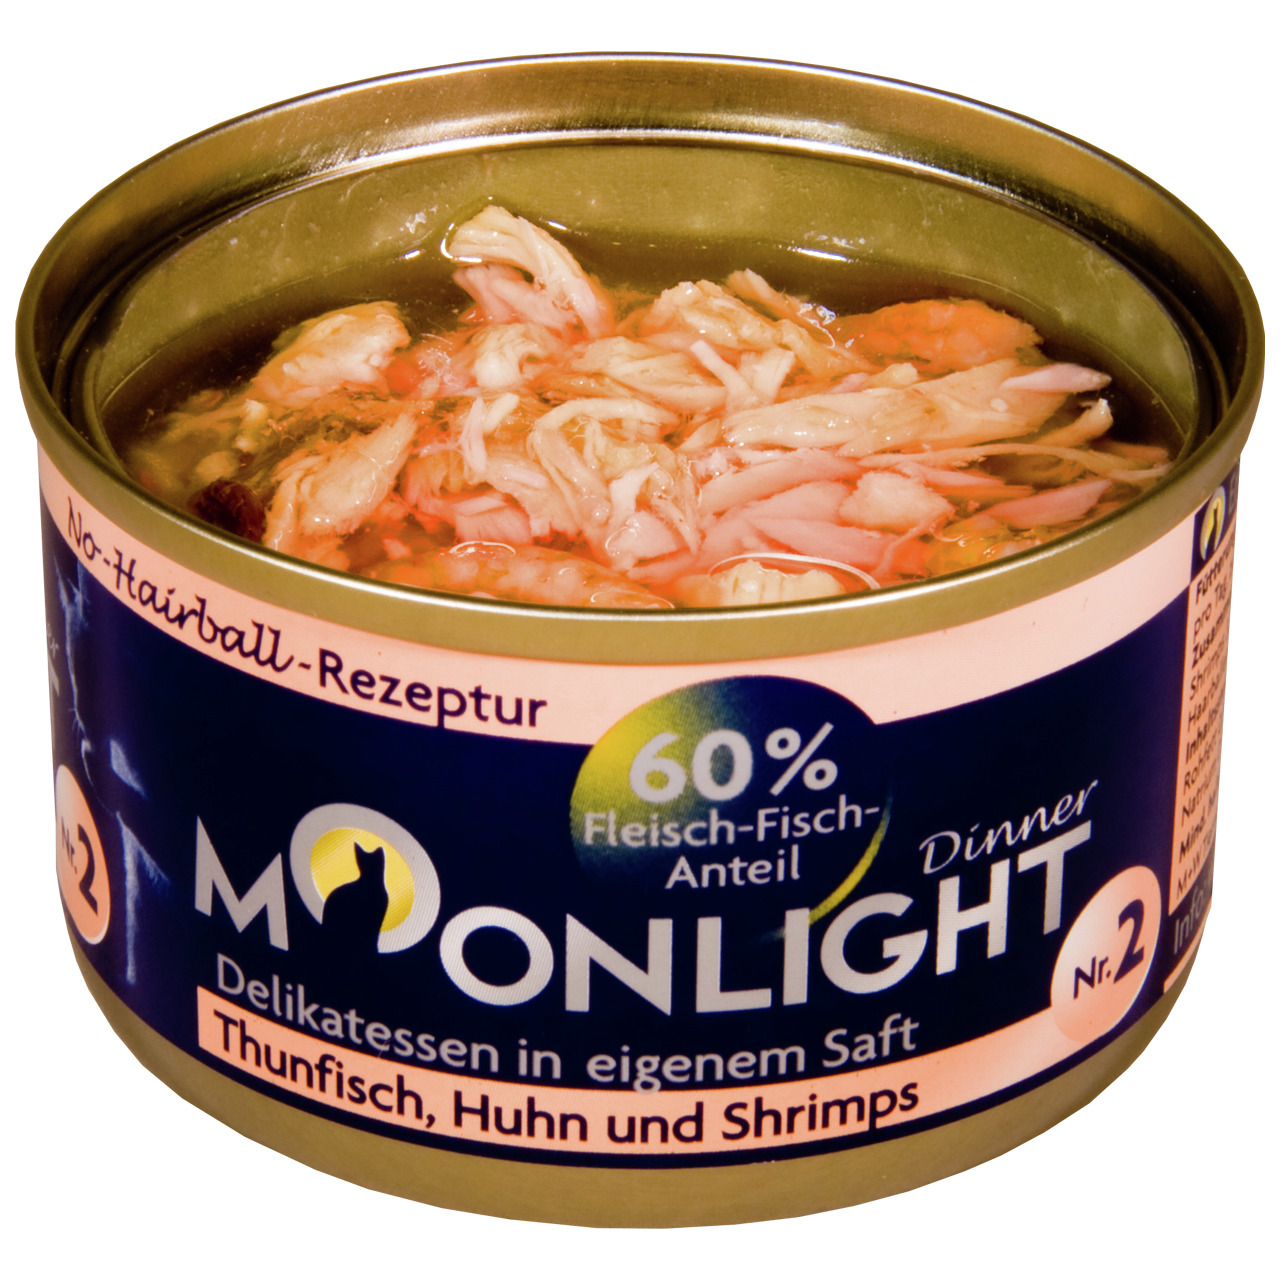 Sparpaket 48 x 80 g Moonlight Dinner Nr. 2 Thunfisch, Huhn und Shrimps in eigenem Saft Katzen Nassfutter